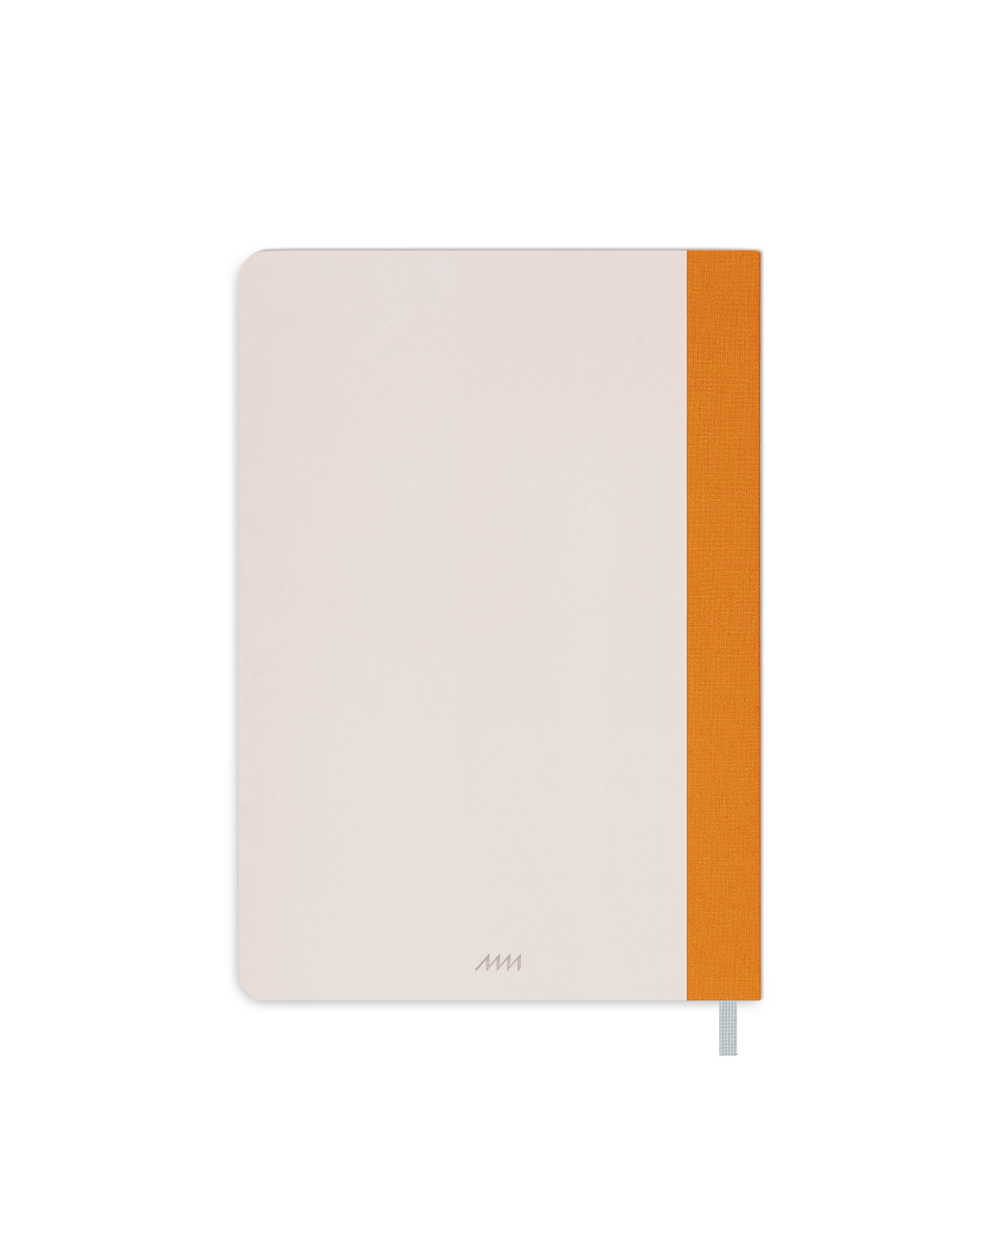 Refillable Notebook Insert (A5)